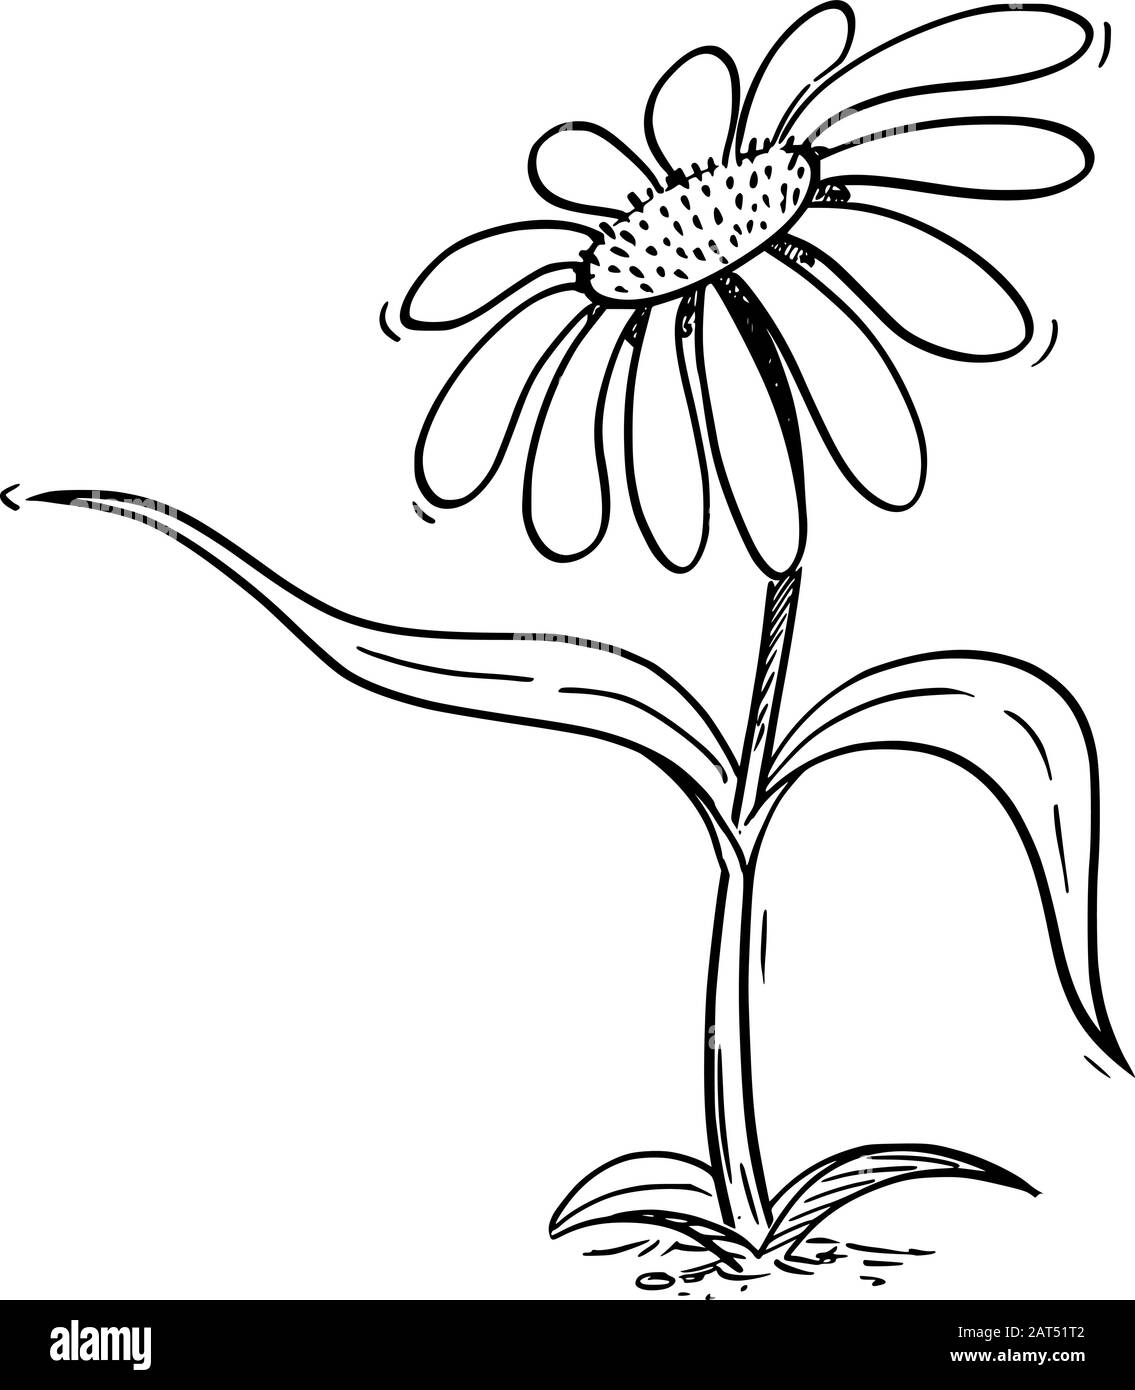 Illustrazione vettoriale del carattere di margherita flowering di cartone animato che mostra o indica qualcosa da foglia. Ecologia o natura pubblicità o disegno di vendita. Illustrazione Vettoriale